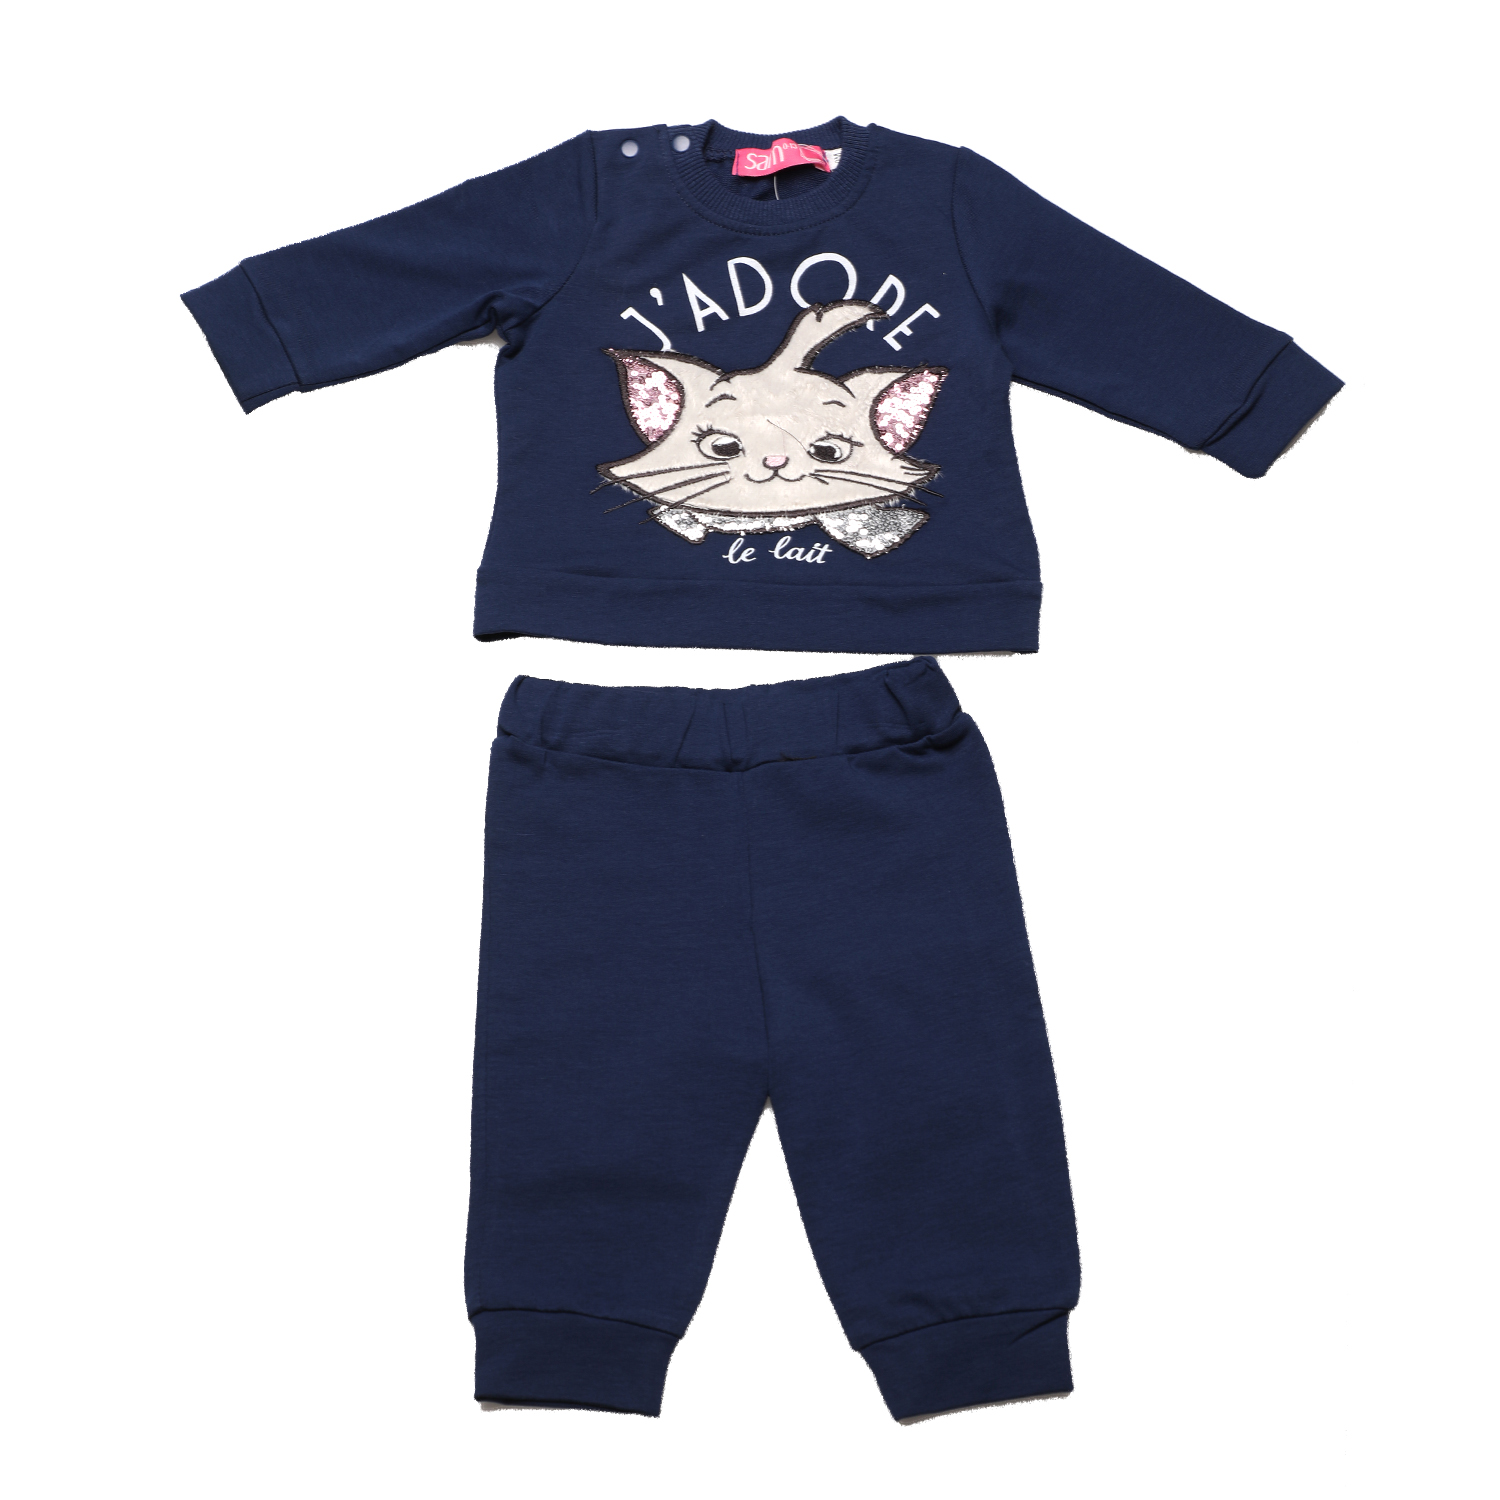 Παιδικά/Baby/Ρούχα/Σετ SAM 0-13 - Βρεφικό σετ φόρμας SAM 0-13 J'ADORE LE LAIT μπλε